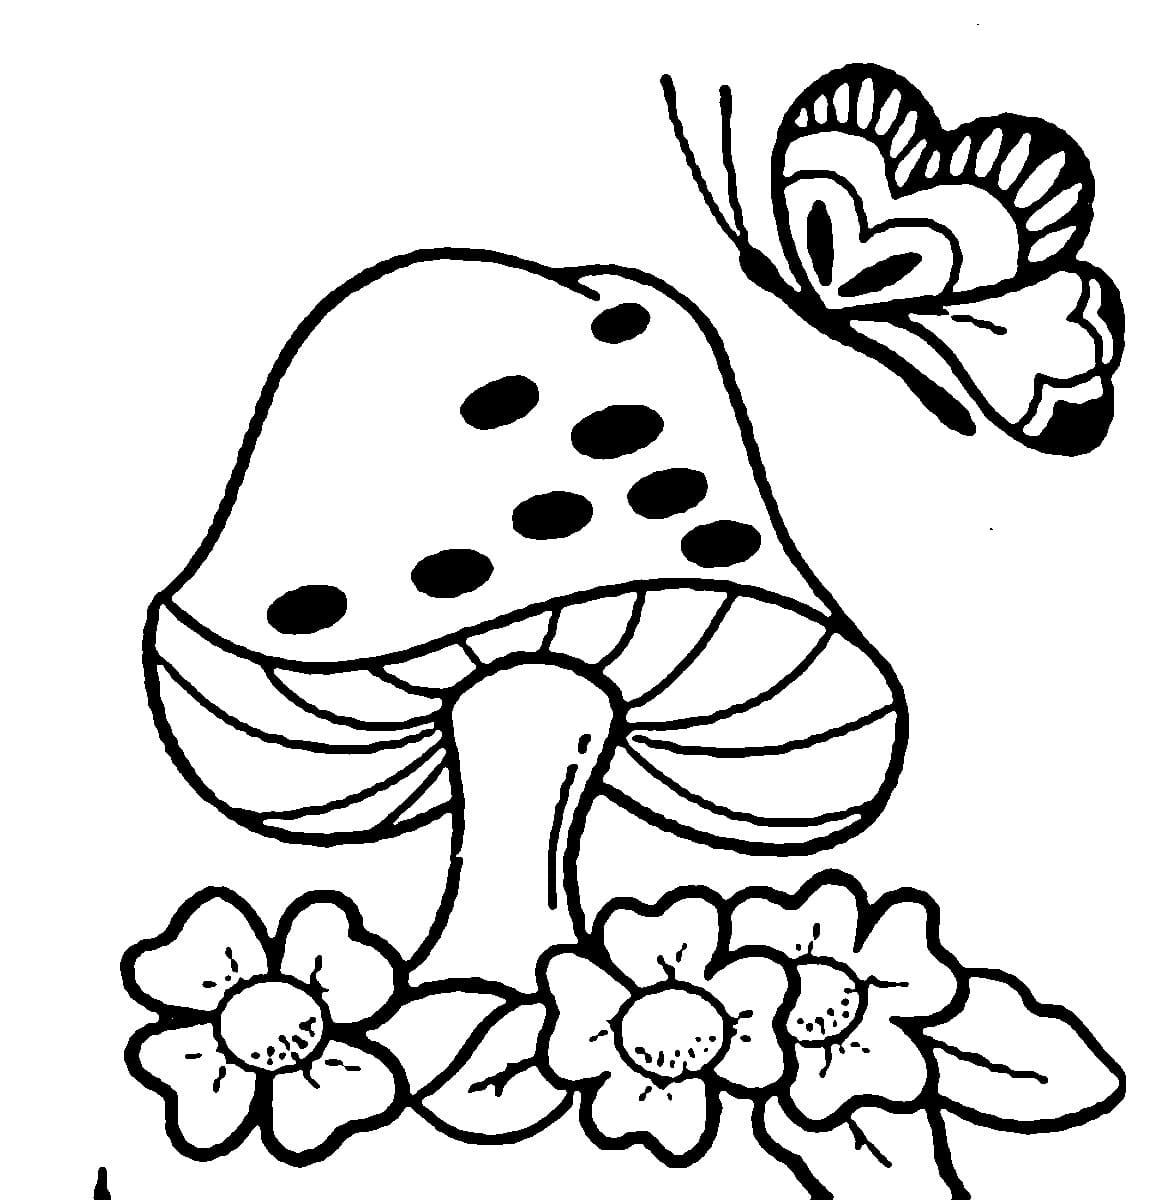 버섯과 나비